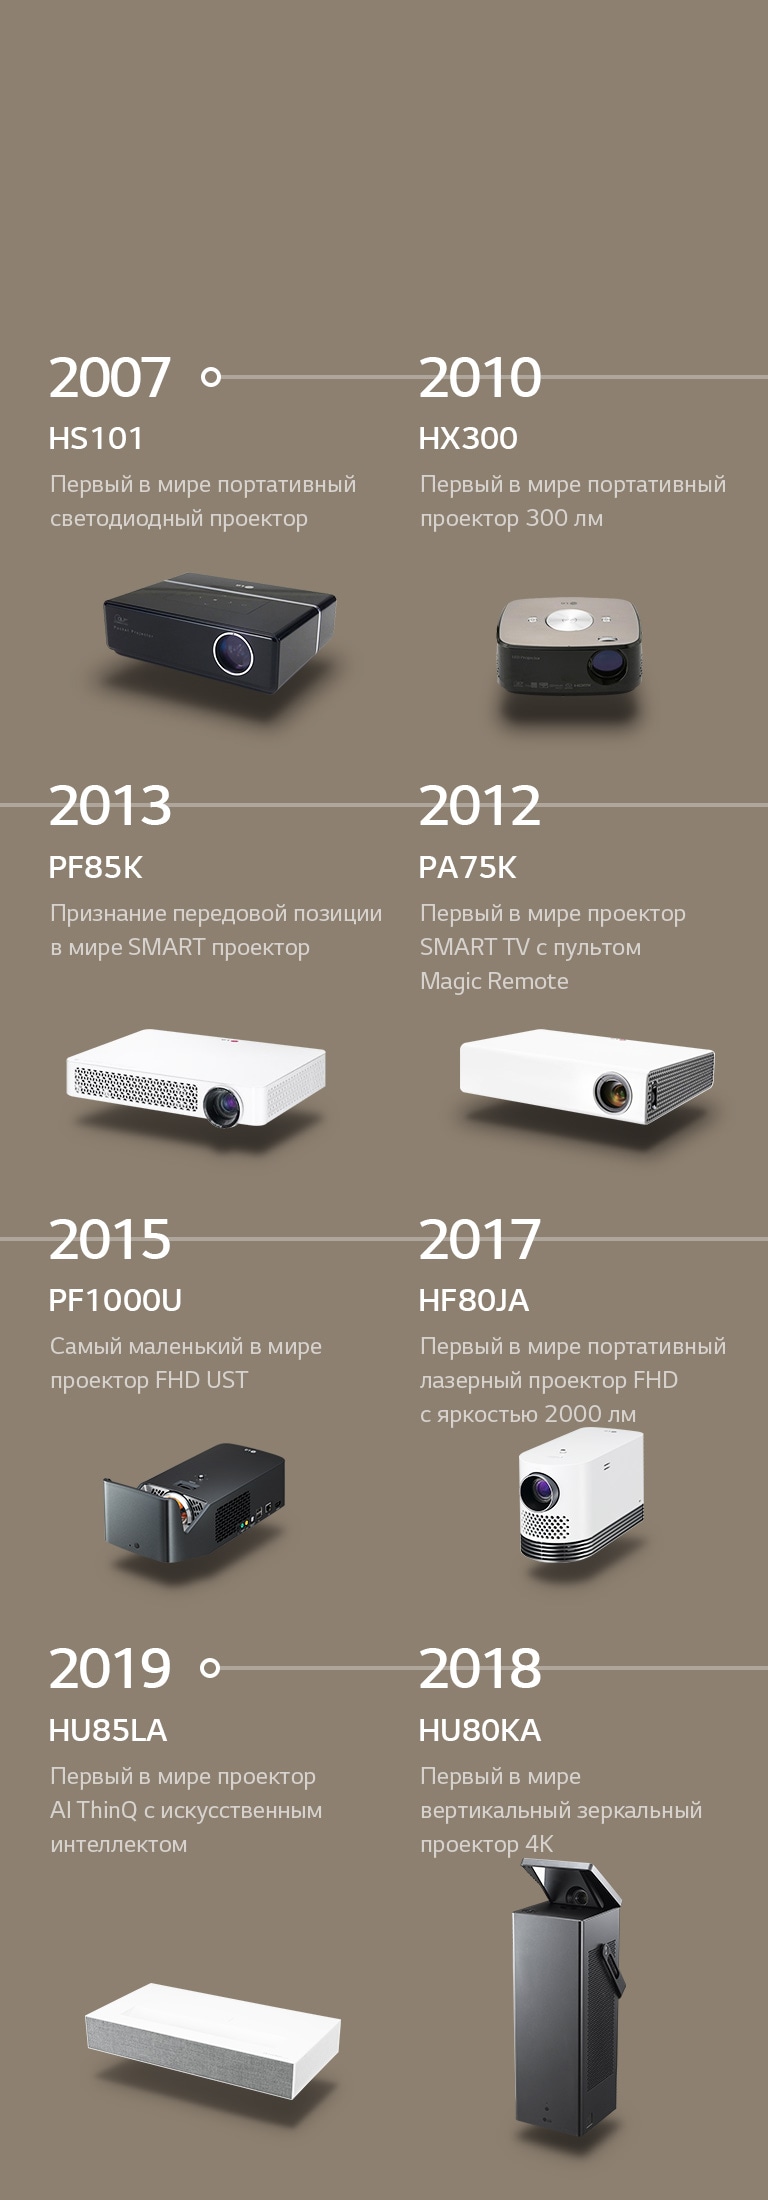 Инновационные достижения LG CineBeam с 2007 по 2019 год